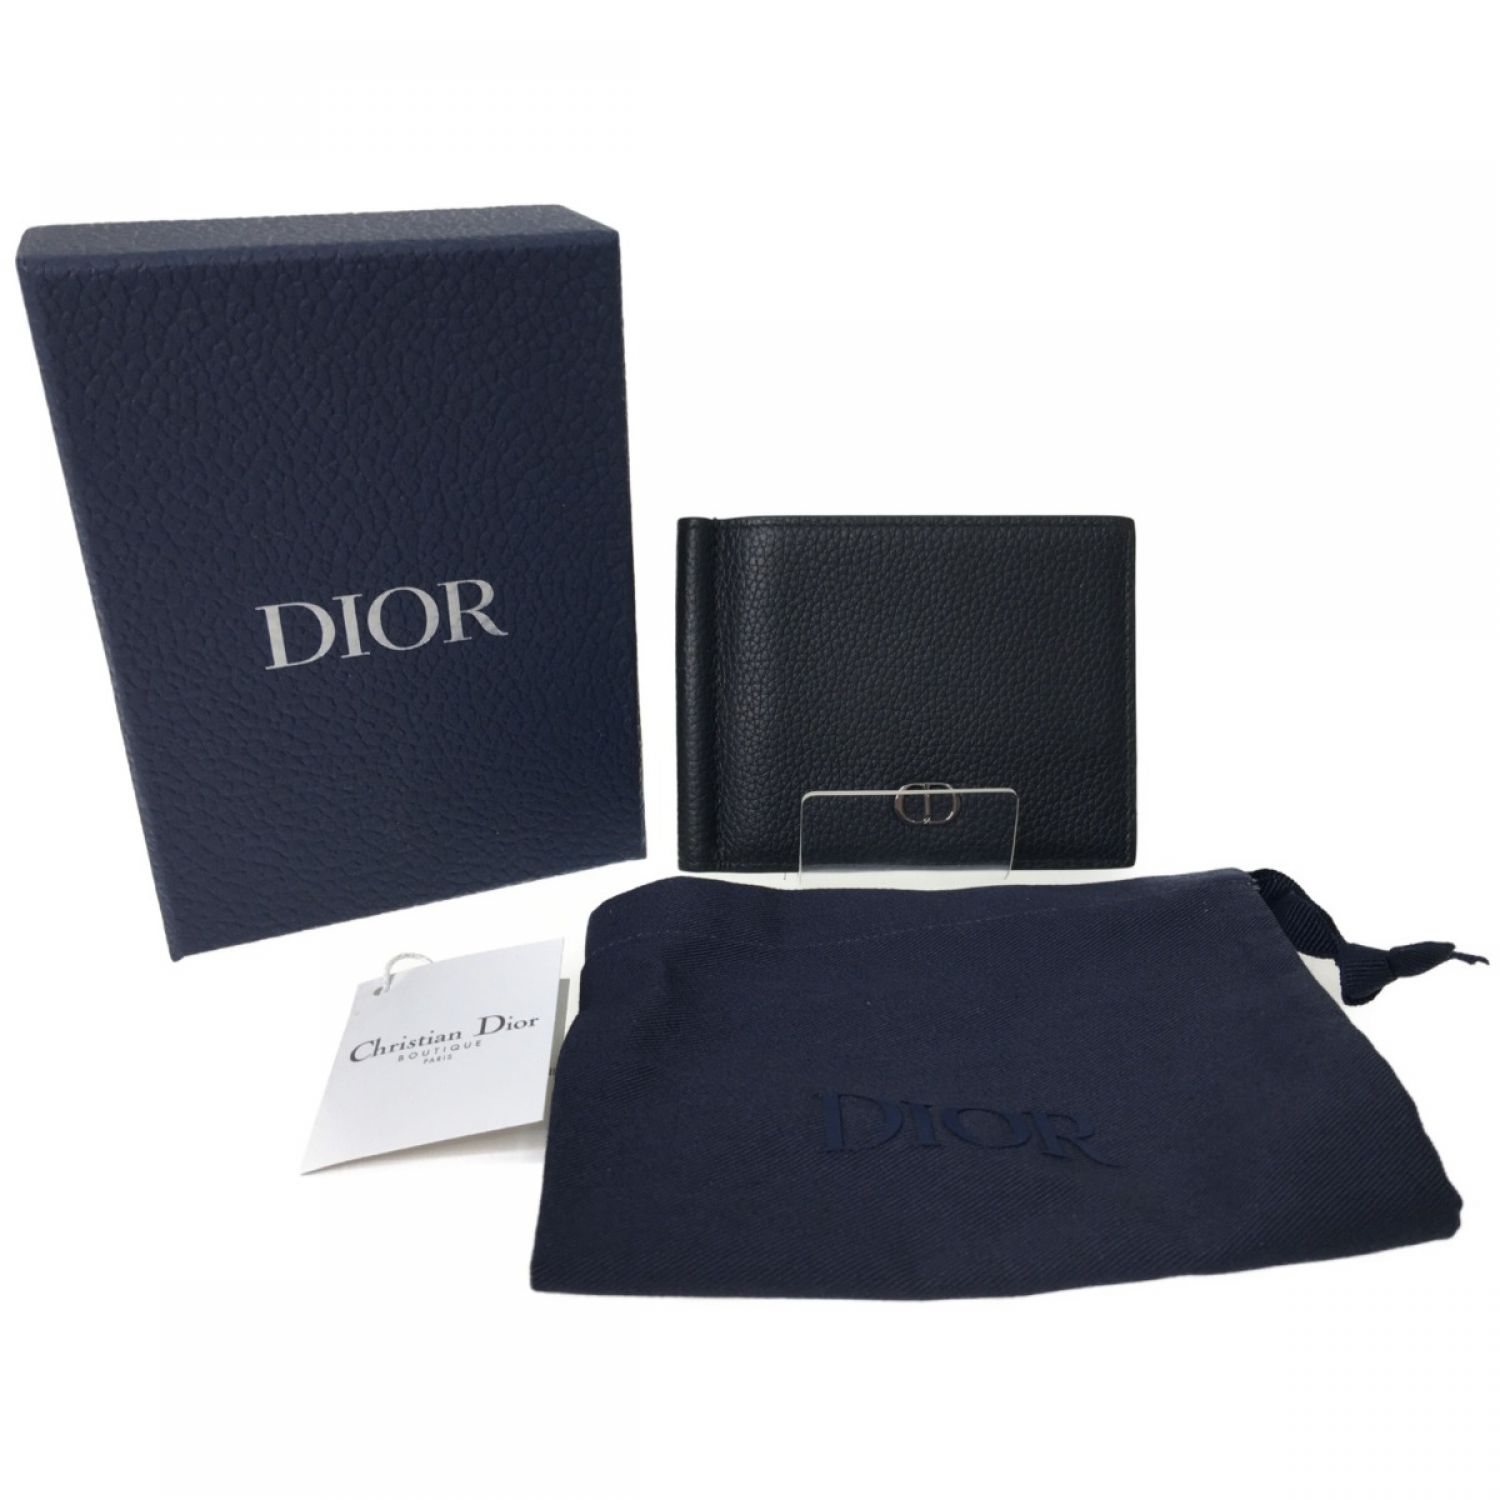 ▽▽Christian Dior クリスチャンディオール ディオールオム メンズ